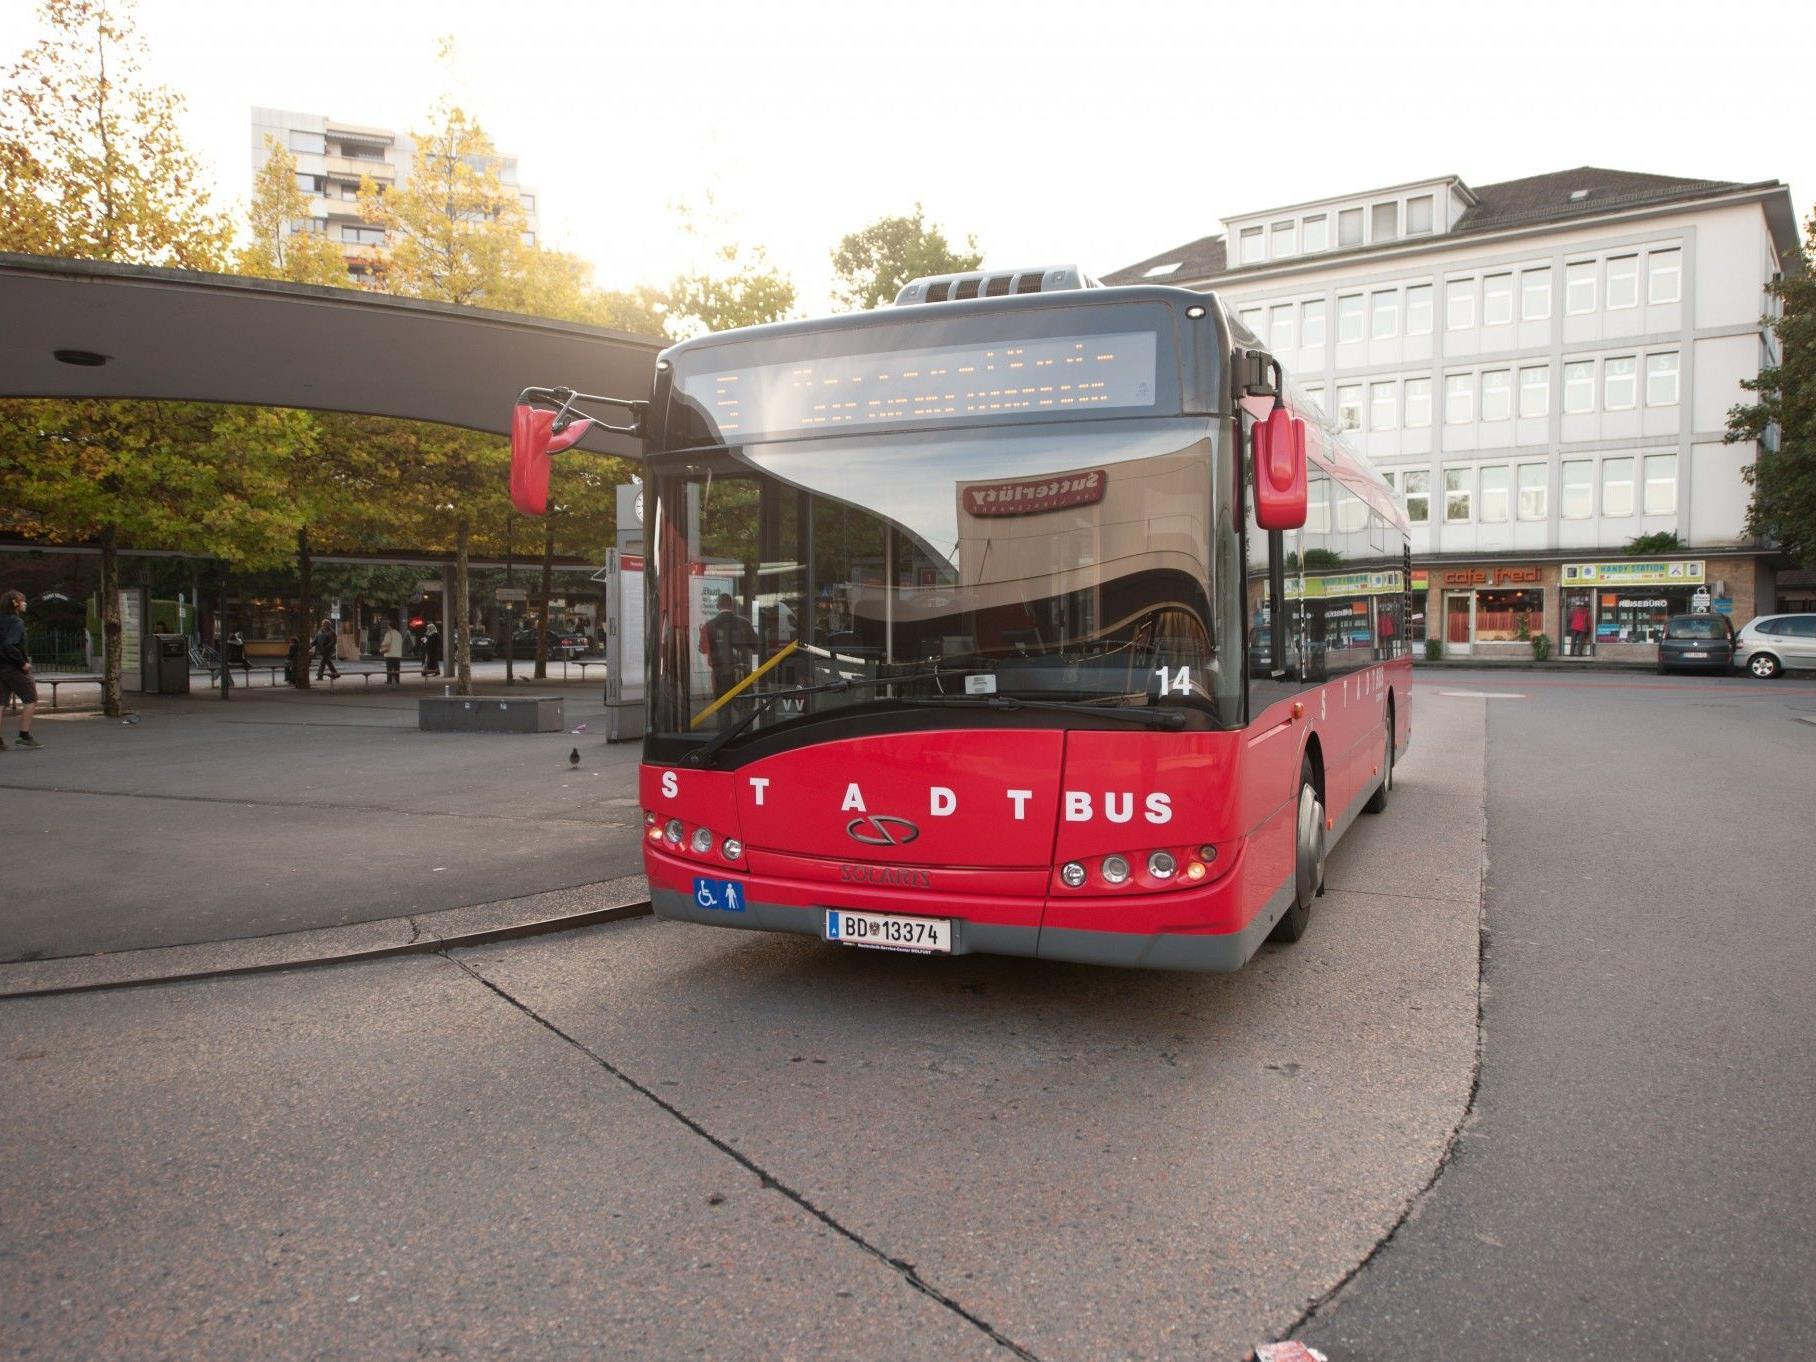 Der Stadtbus fährt am 8. Dezember trotz Feiertag.